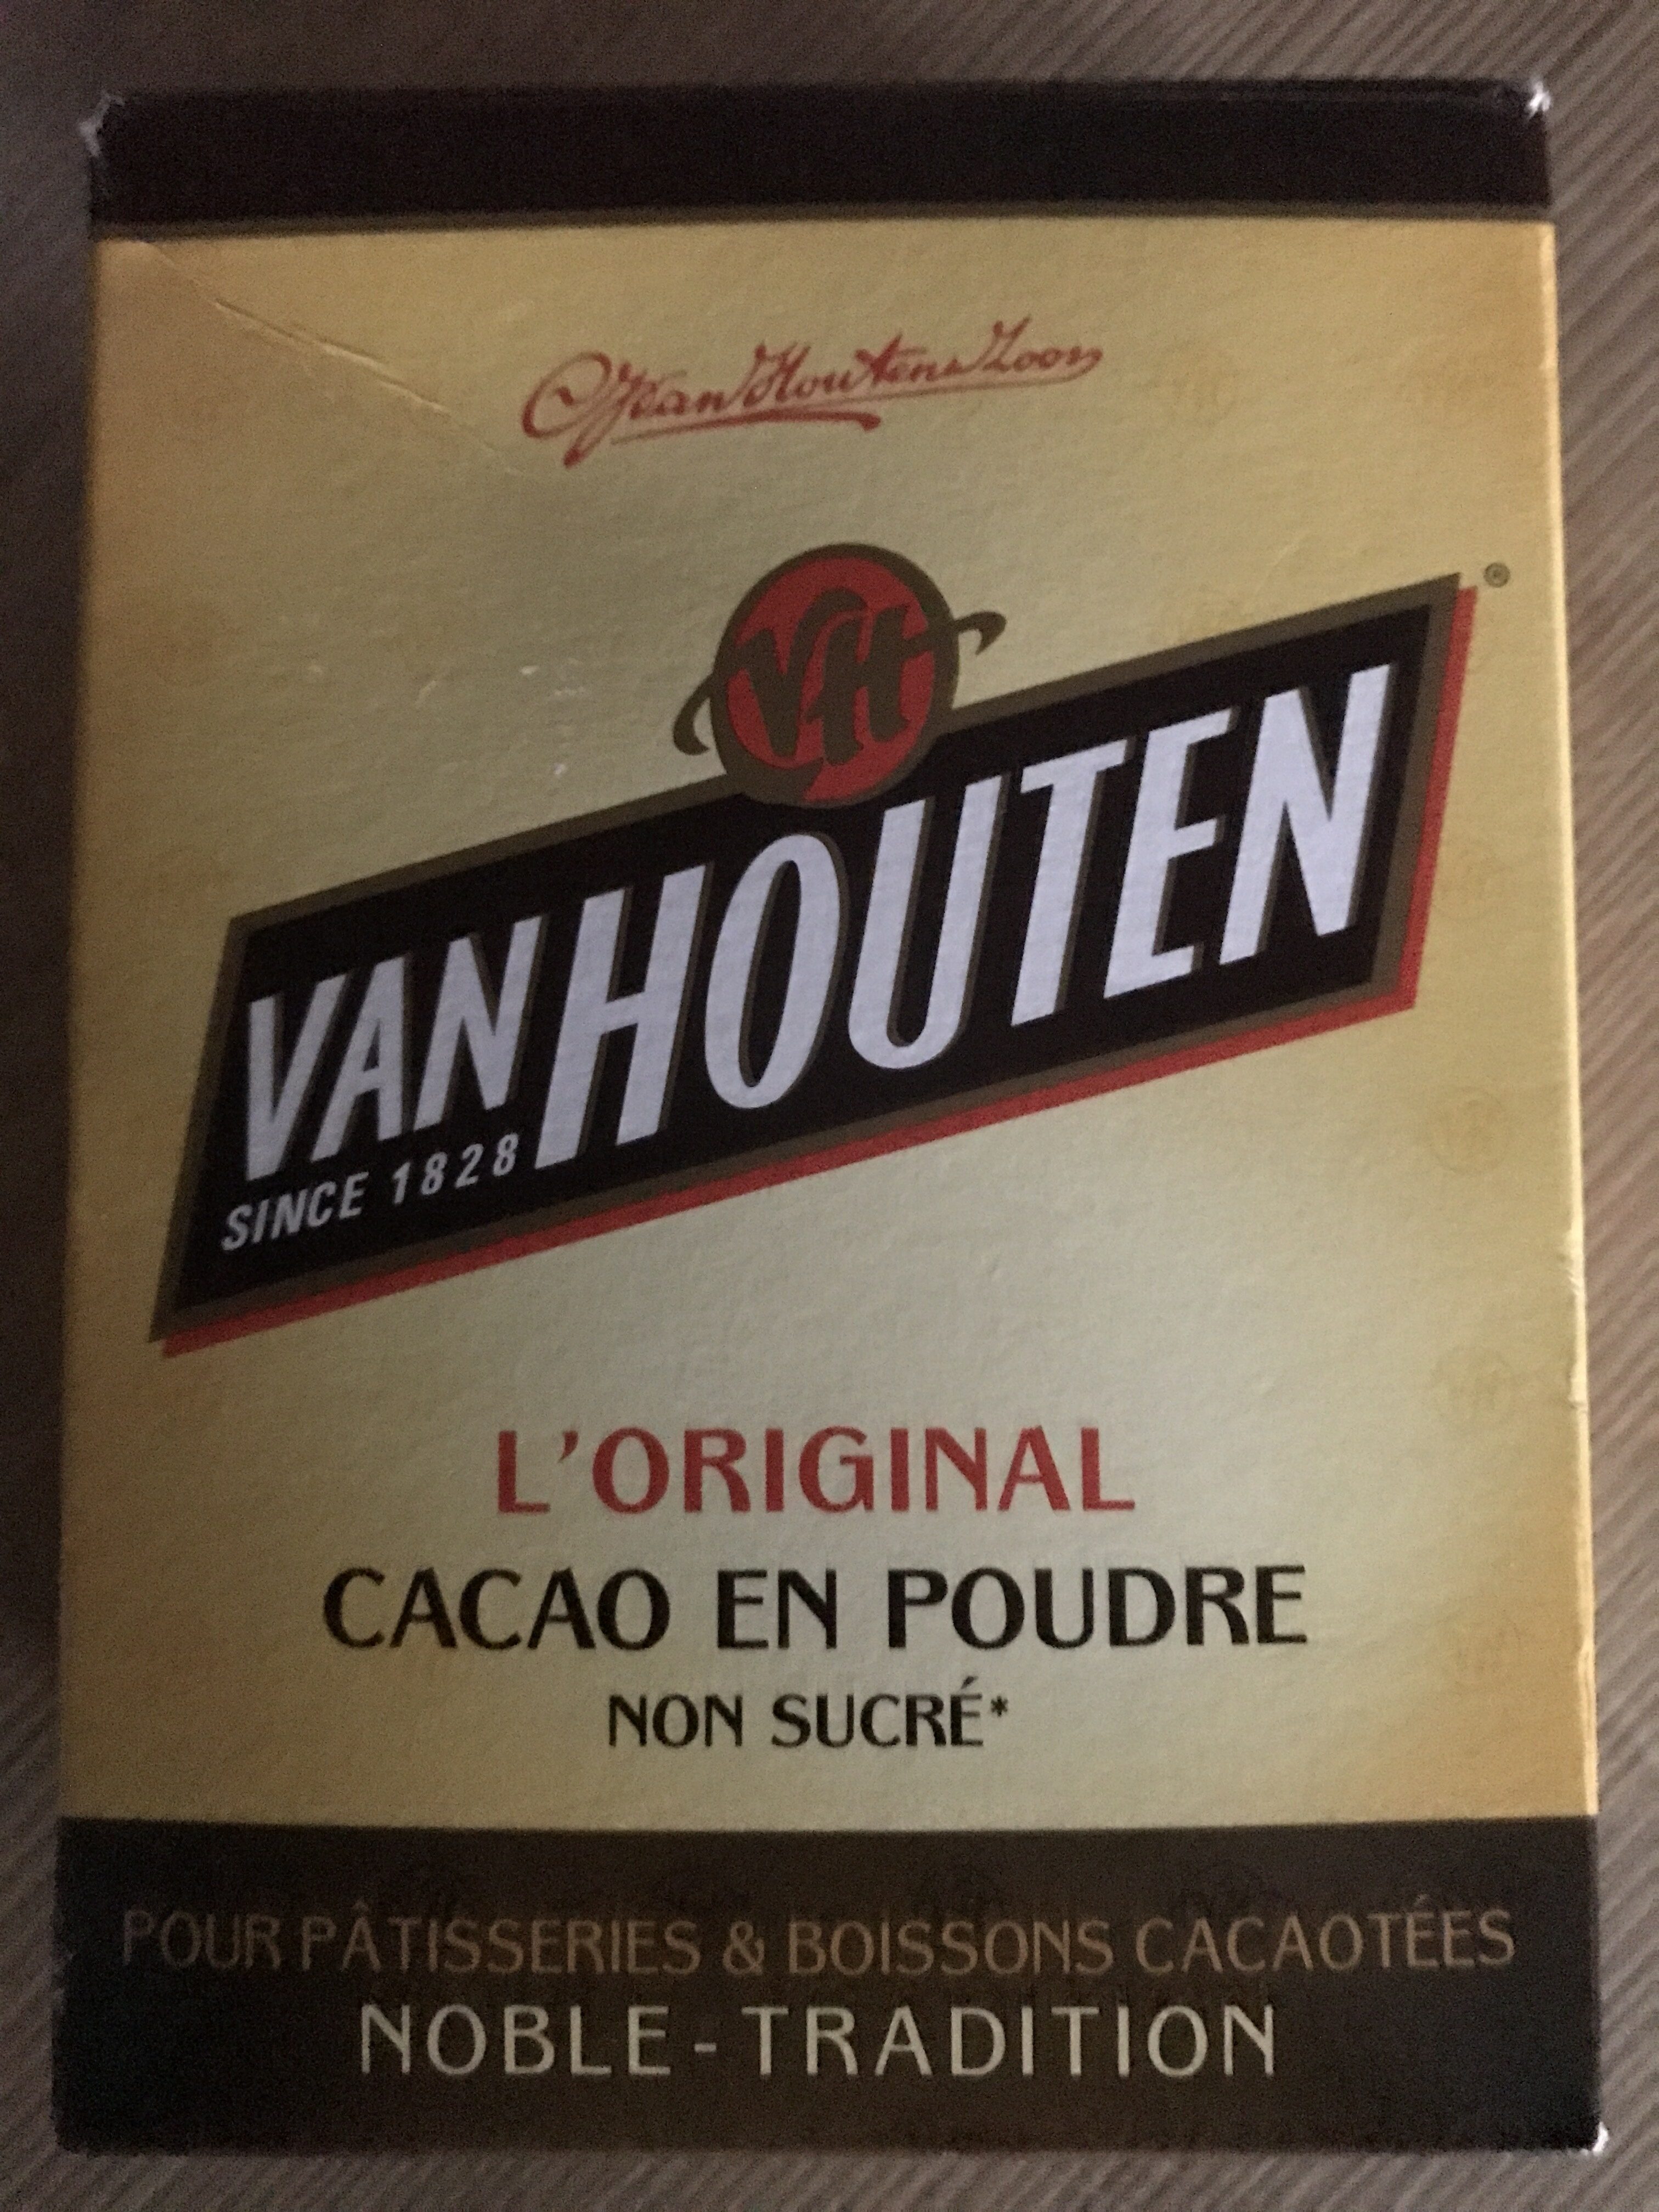 L'Original - Cacao en poudre non sucré - Product - fr